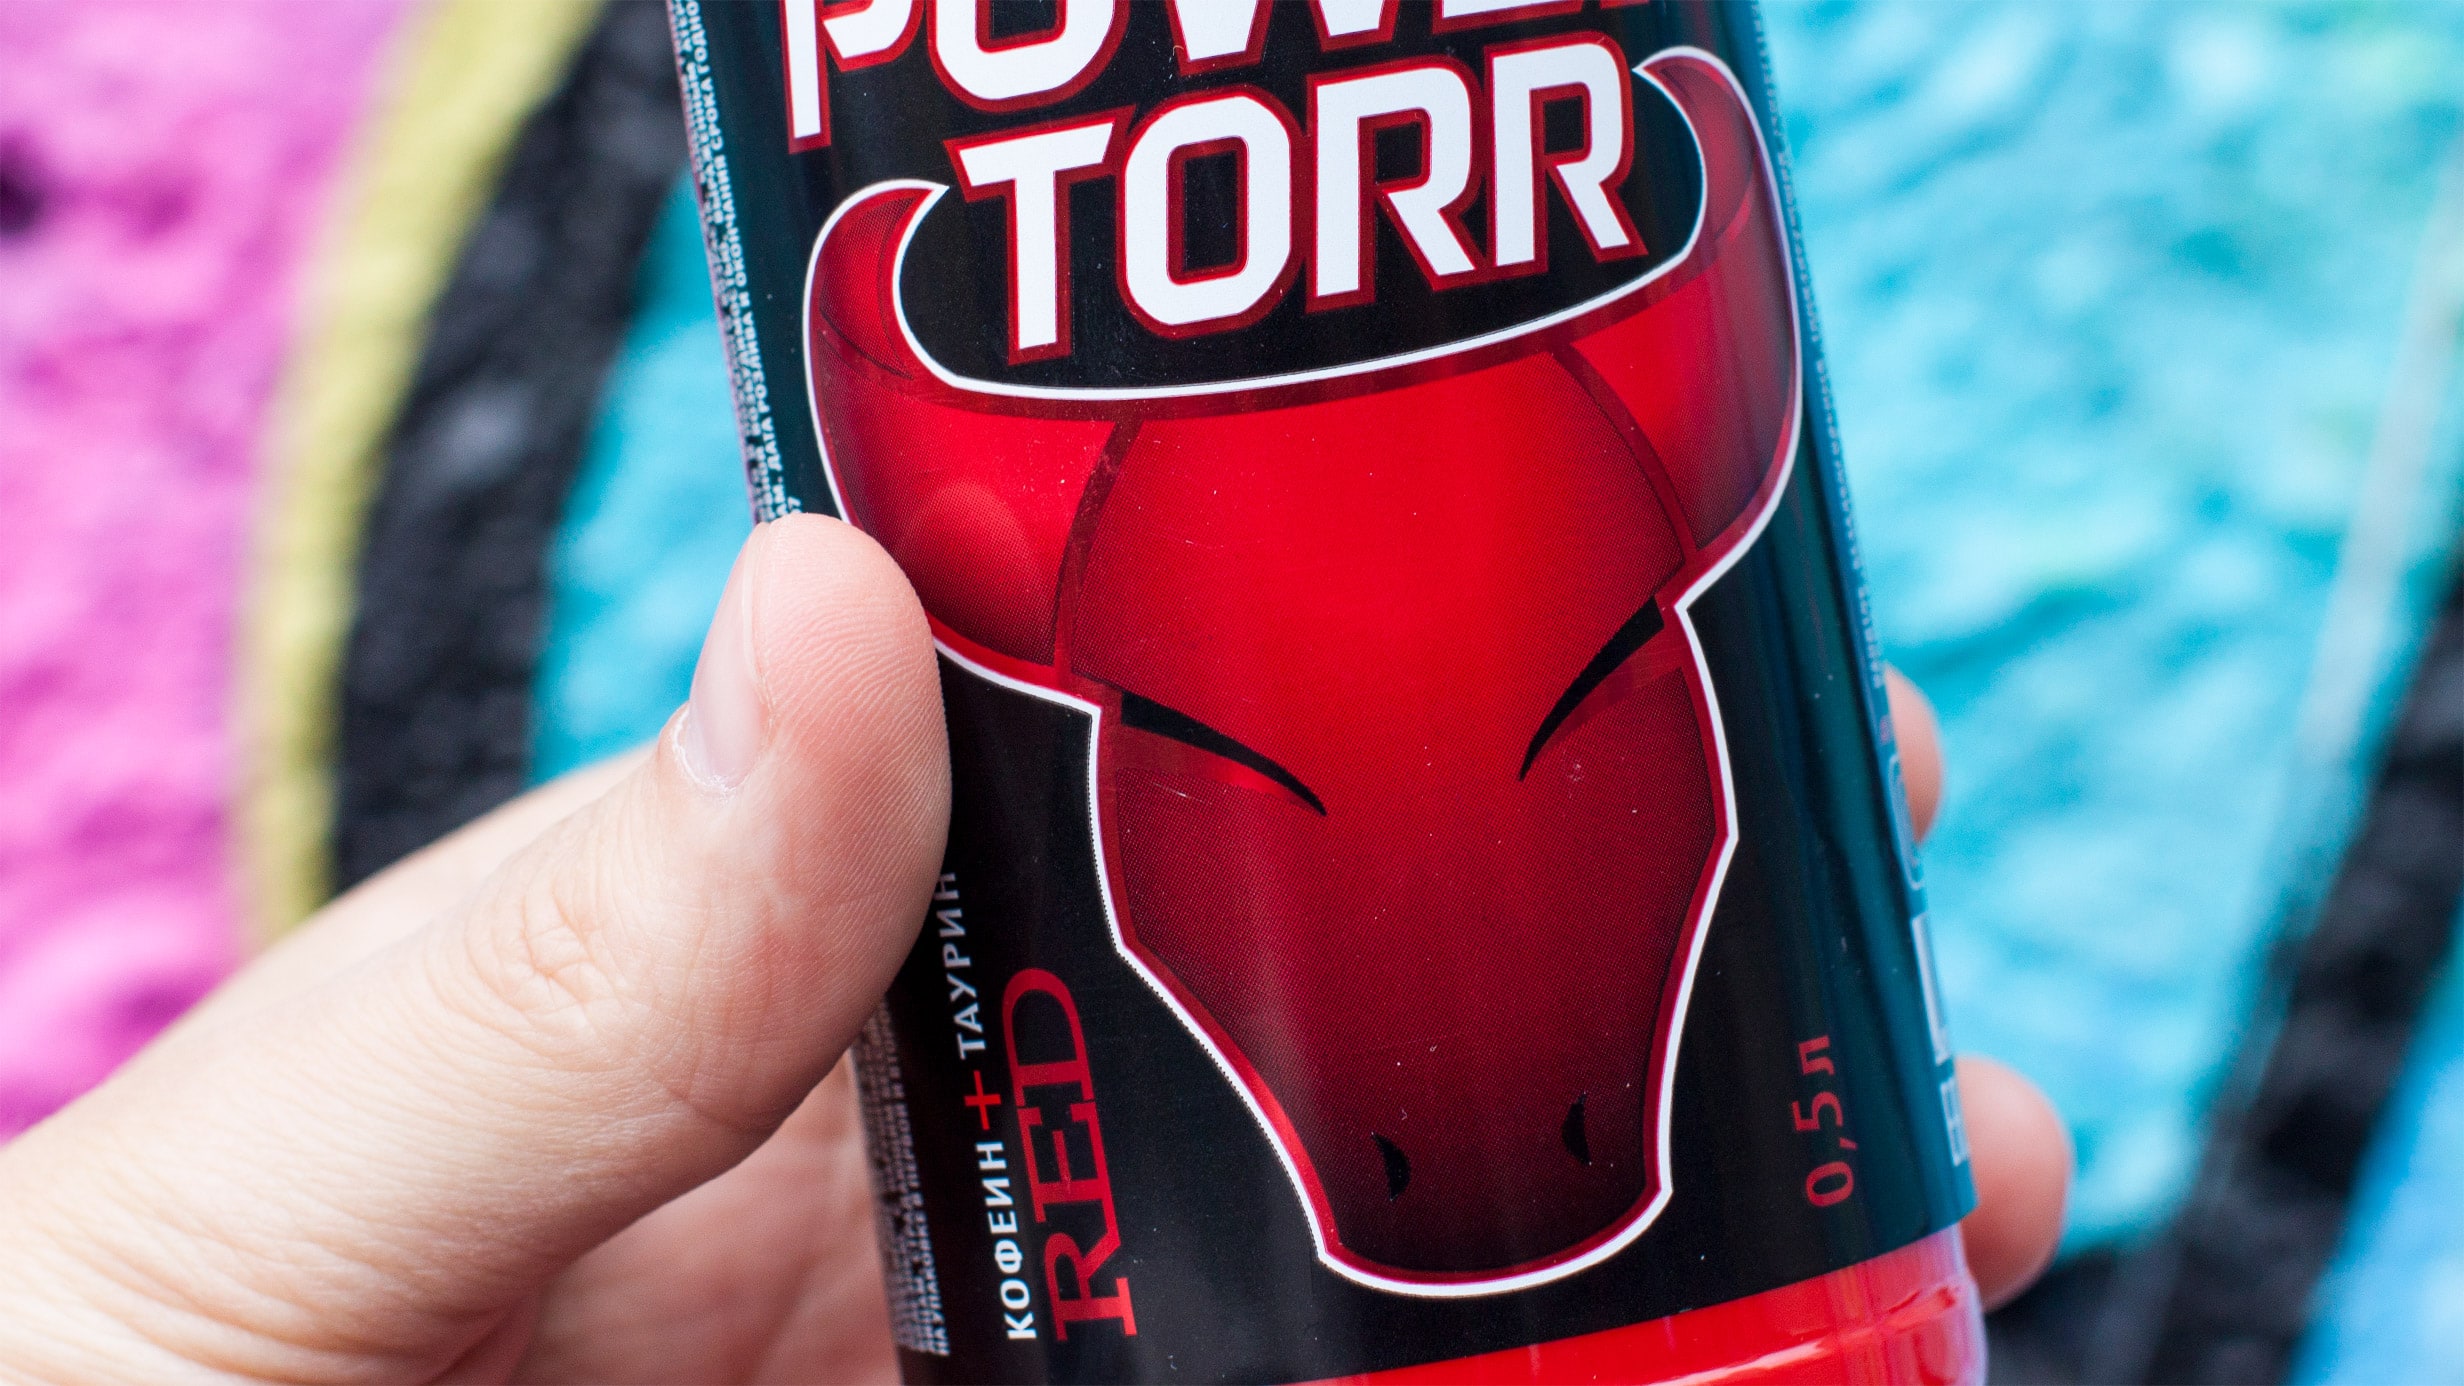 ]Энергетический напиток Power Torr дизайн